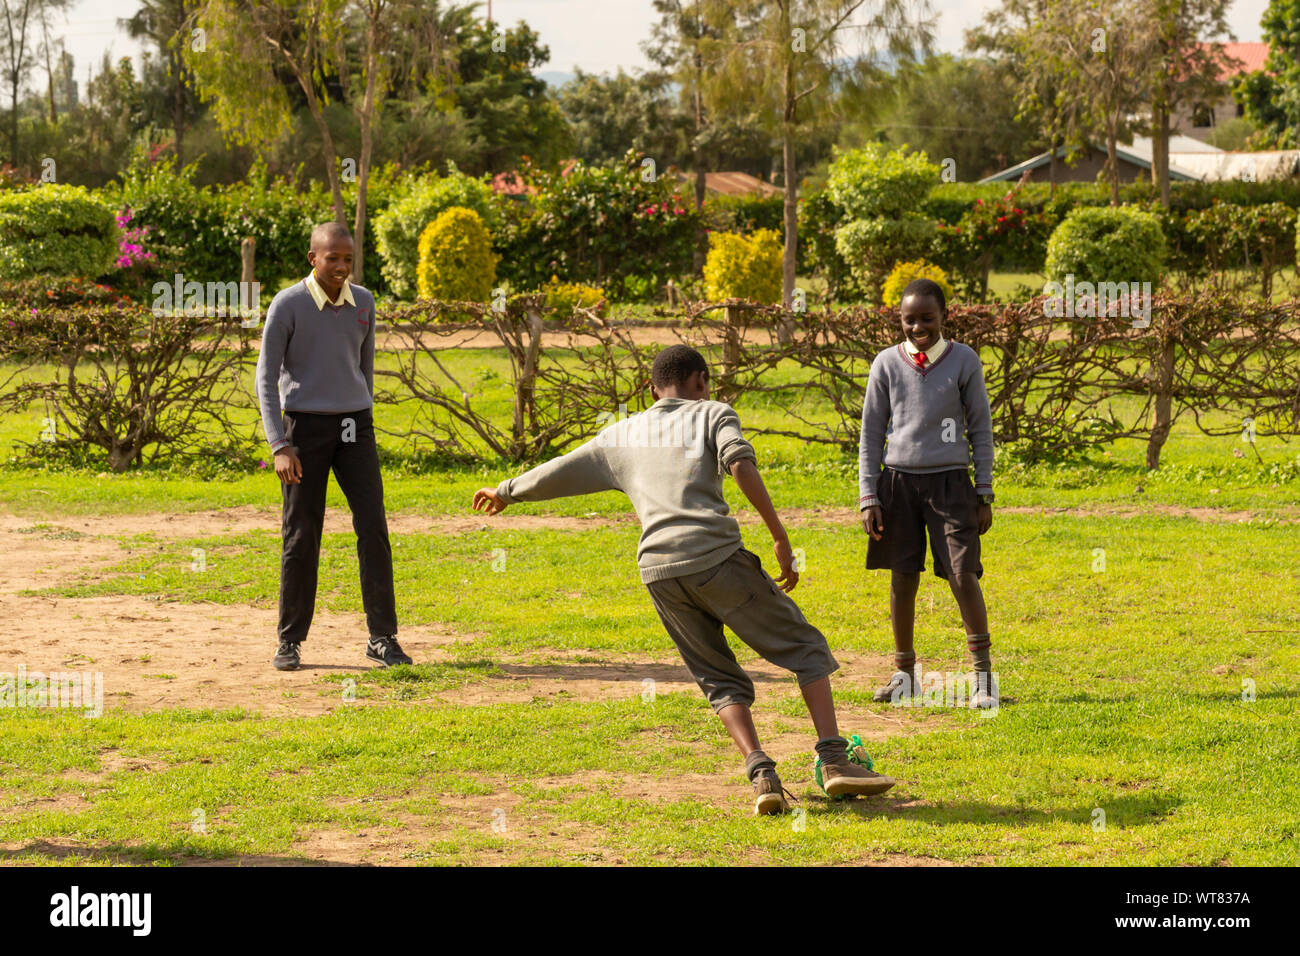 Imani Junior Academy, Nanyuki, contea di Laikipia, Kenya - Giugno 13th, 2019: Candida fotografia di i giovani della scuola i bambini giocano a calcio nel campo a Imani Foto Stock